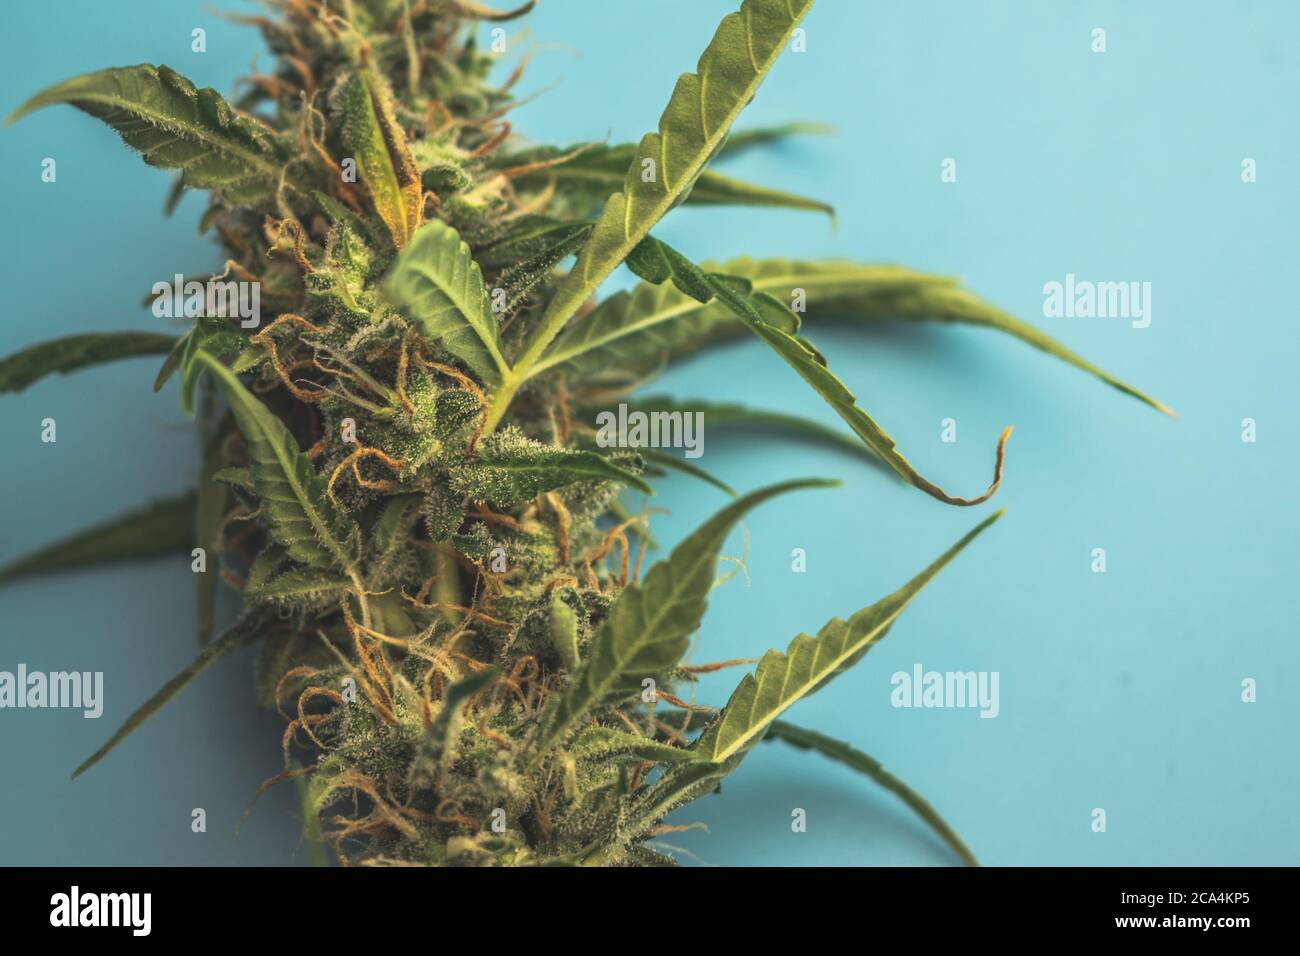 Cannabispflanze mit THC und CBD-Nahaufnahme auf blauem Hintergrund. Medizinische Verwendung von Marihuana im Gesundheitswesen. Legale Weed-Industrie Stockfoto